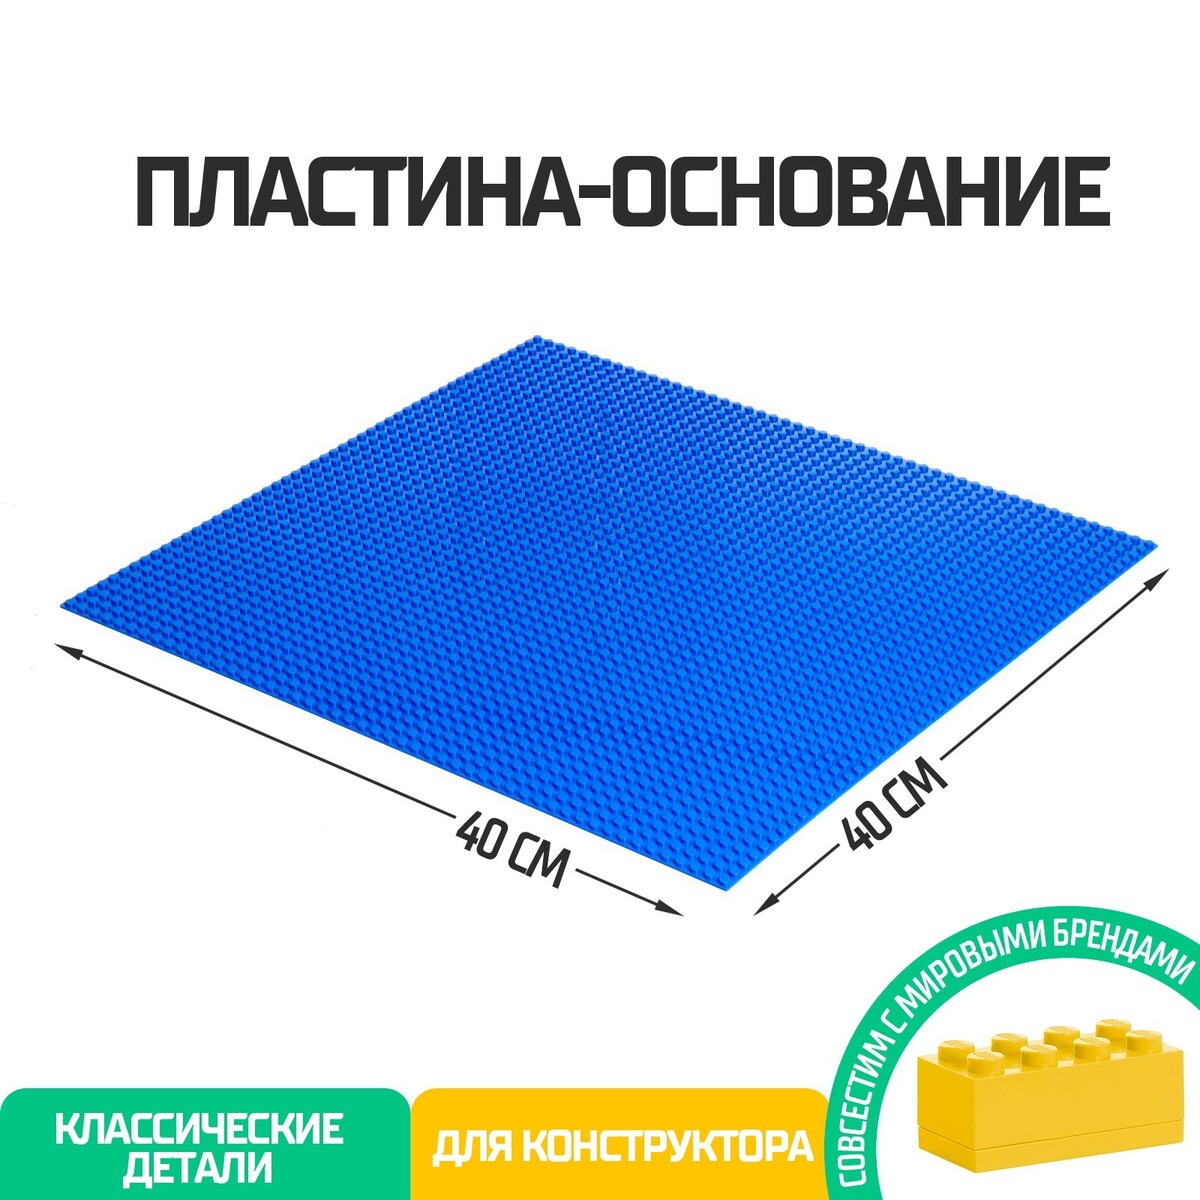 Пластина-основание для конструктора, 40 × 40 см, цвет синий пластина основание для конструктора 25 5 × 12 5 см серый